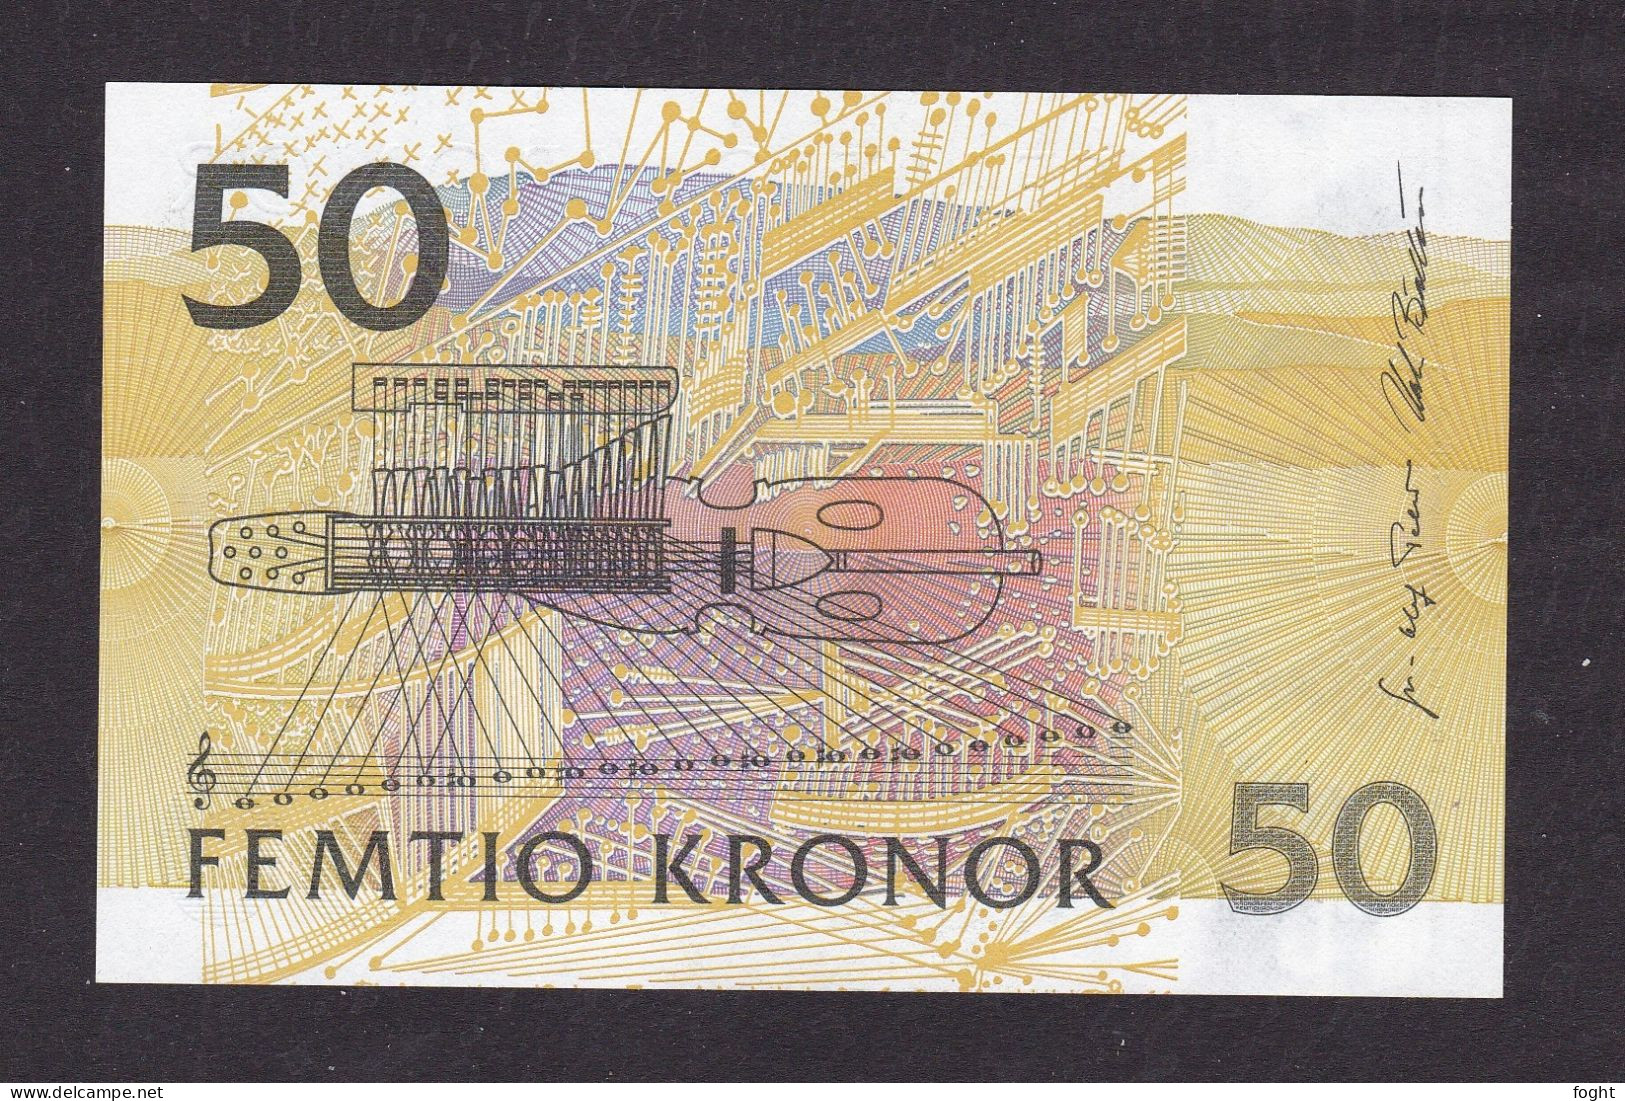 (199)6 Sweden Sveriges Riksbank Banknote 50 Kronor,P#62A - Schweden